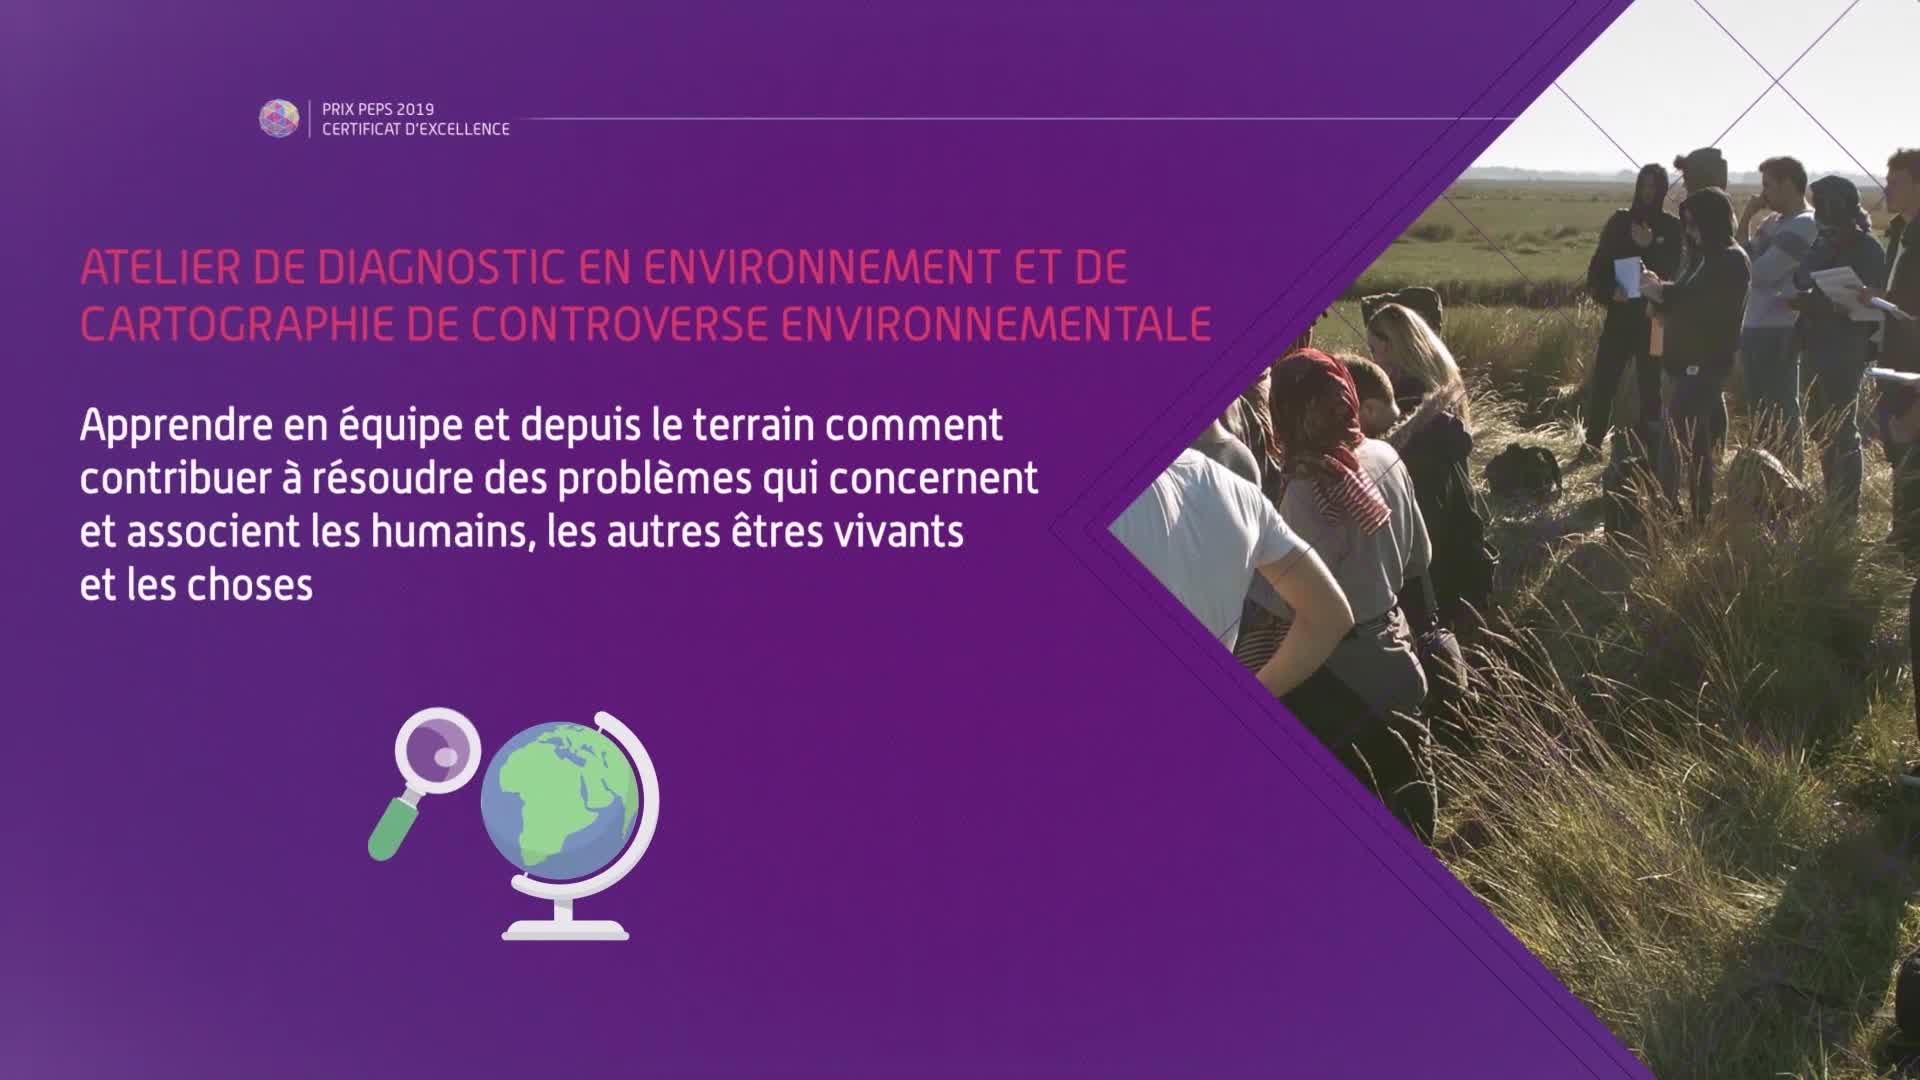 Clip vidéo du prix PEPS 2019 - 01_CERTiFiCAT  "Atelier de diagnostic en environnement et de cartographie de controverse environnementale"